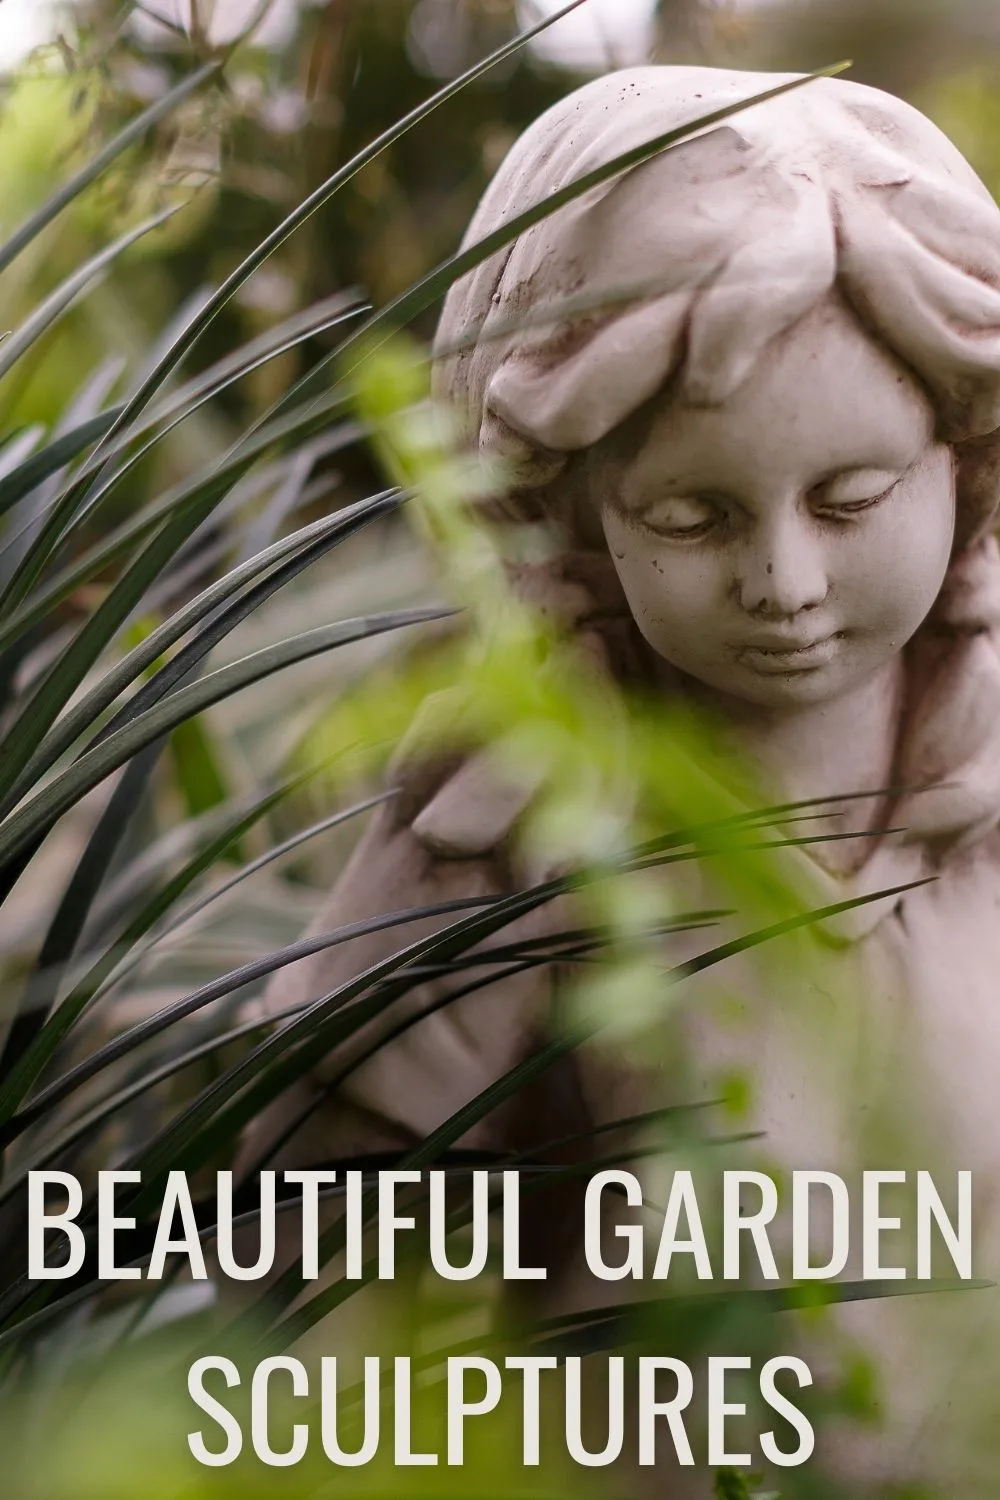 Beautiful garden sculptures